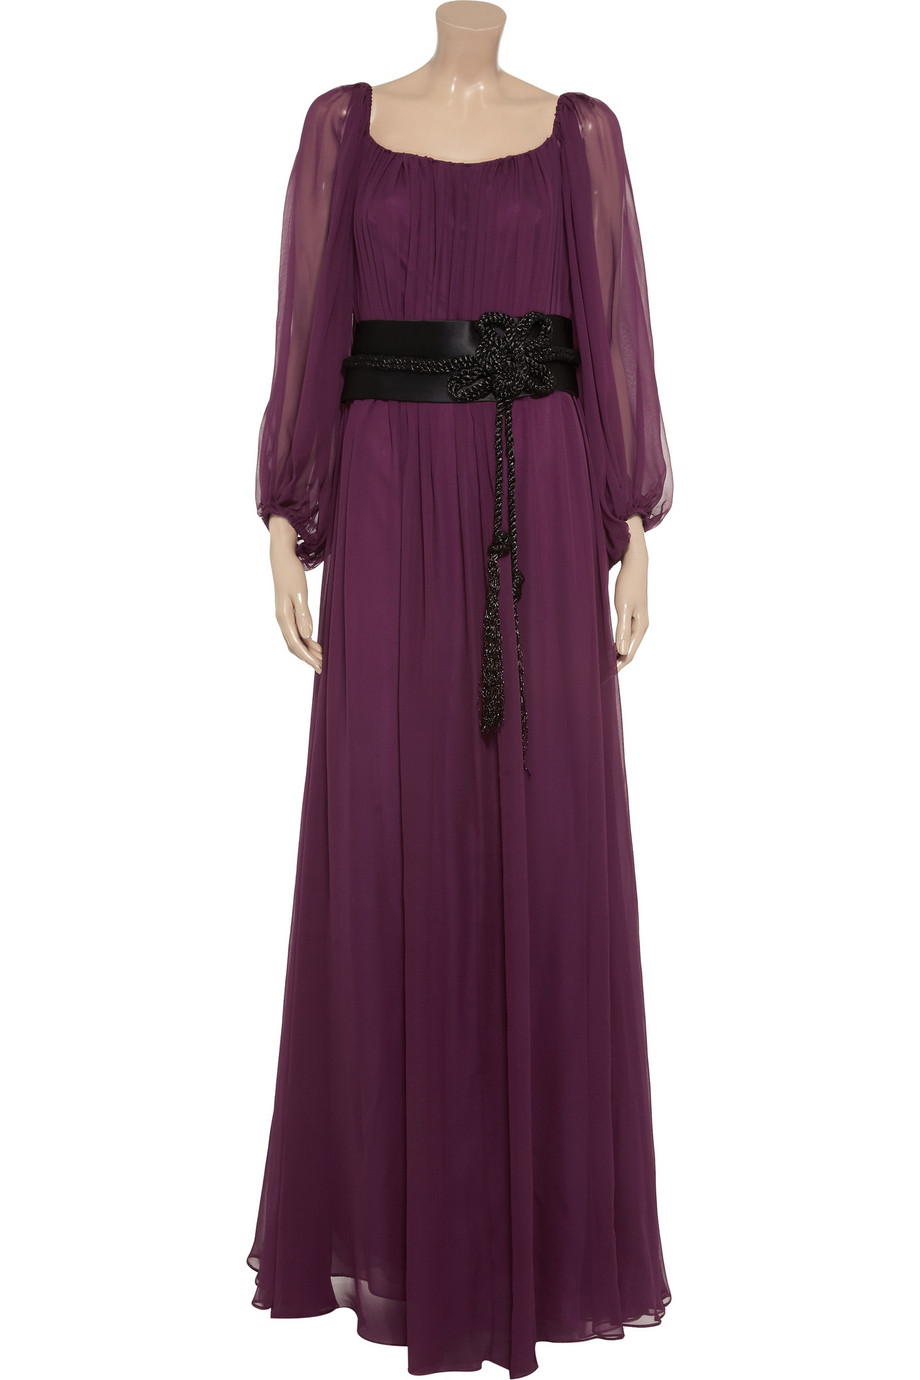 Marchesa notte Contrast Beltdetail Silkchiffon Gown in Plum (Purple) - Lyst